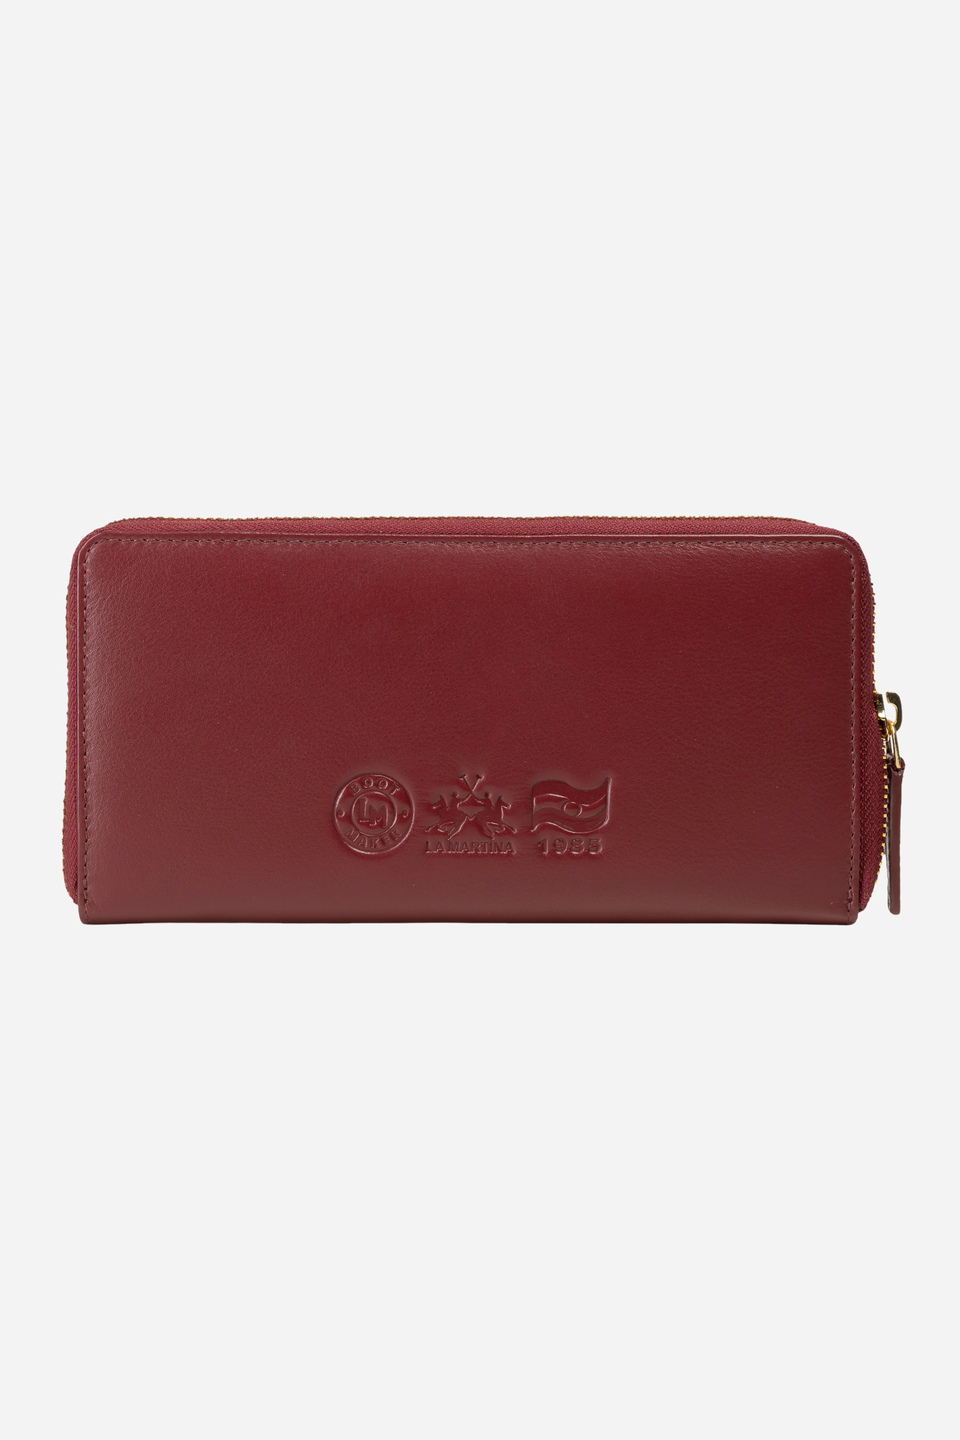 Calfskin wallet - Heritage | La Martina - Official Online Shop